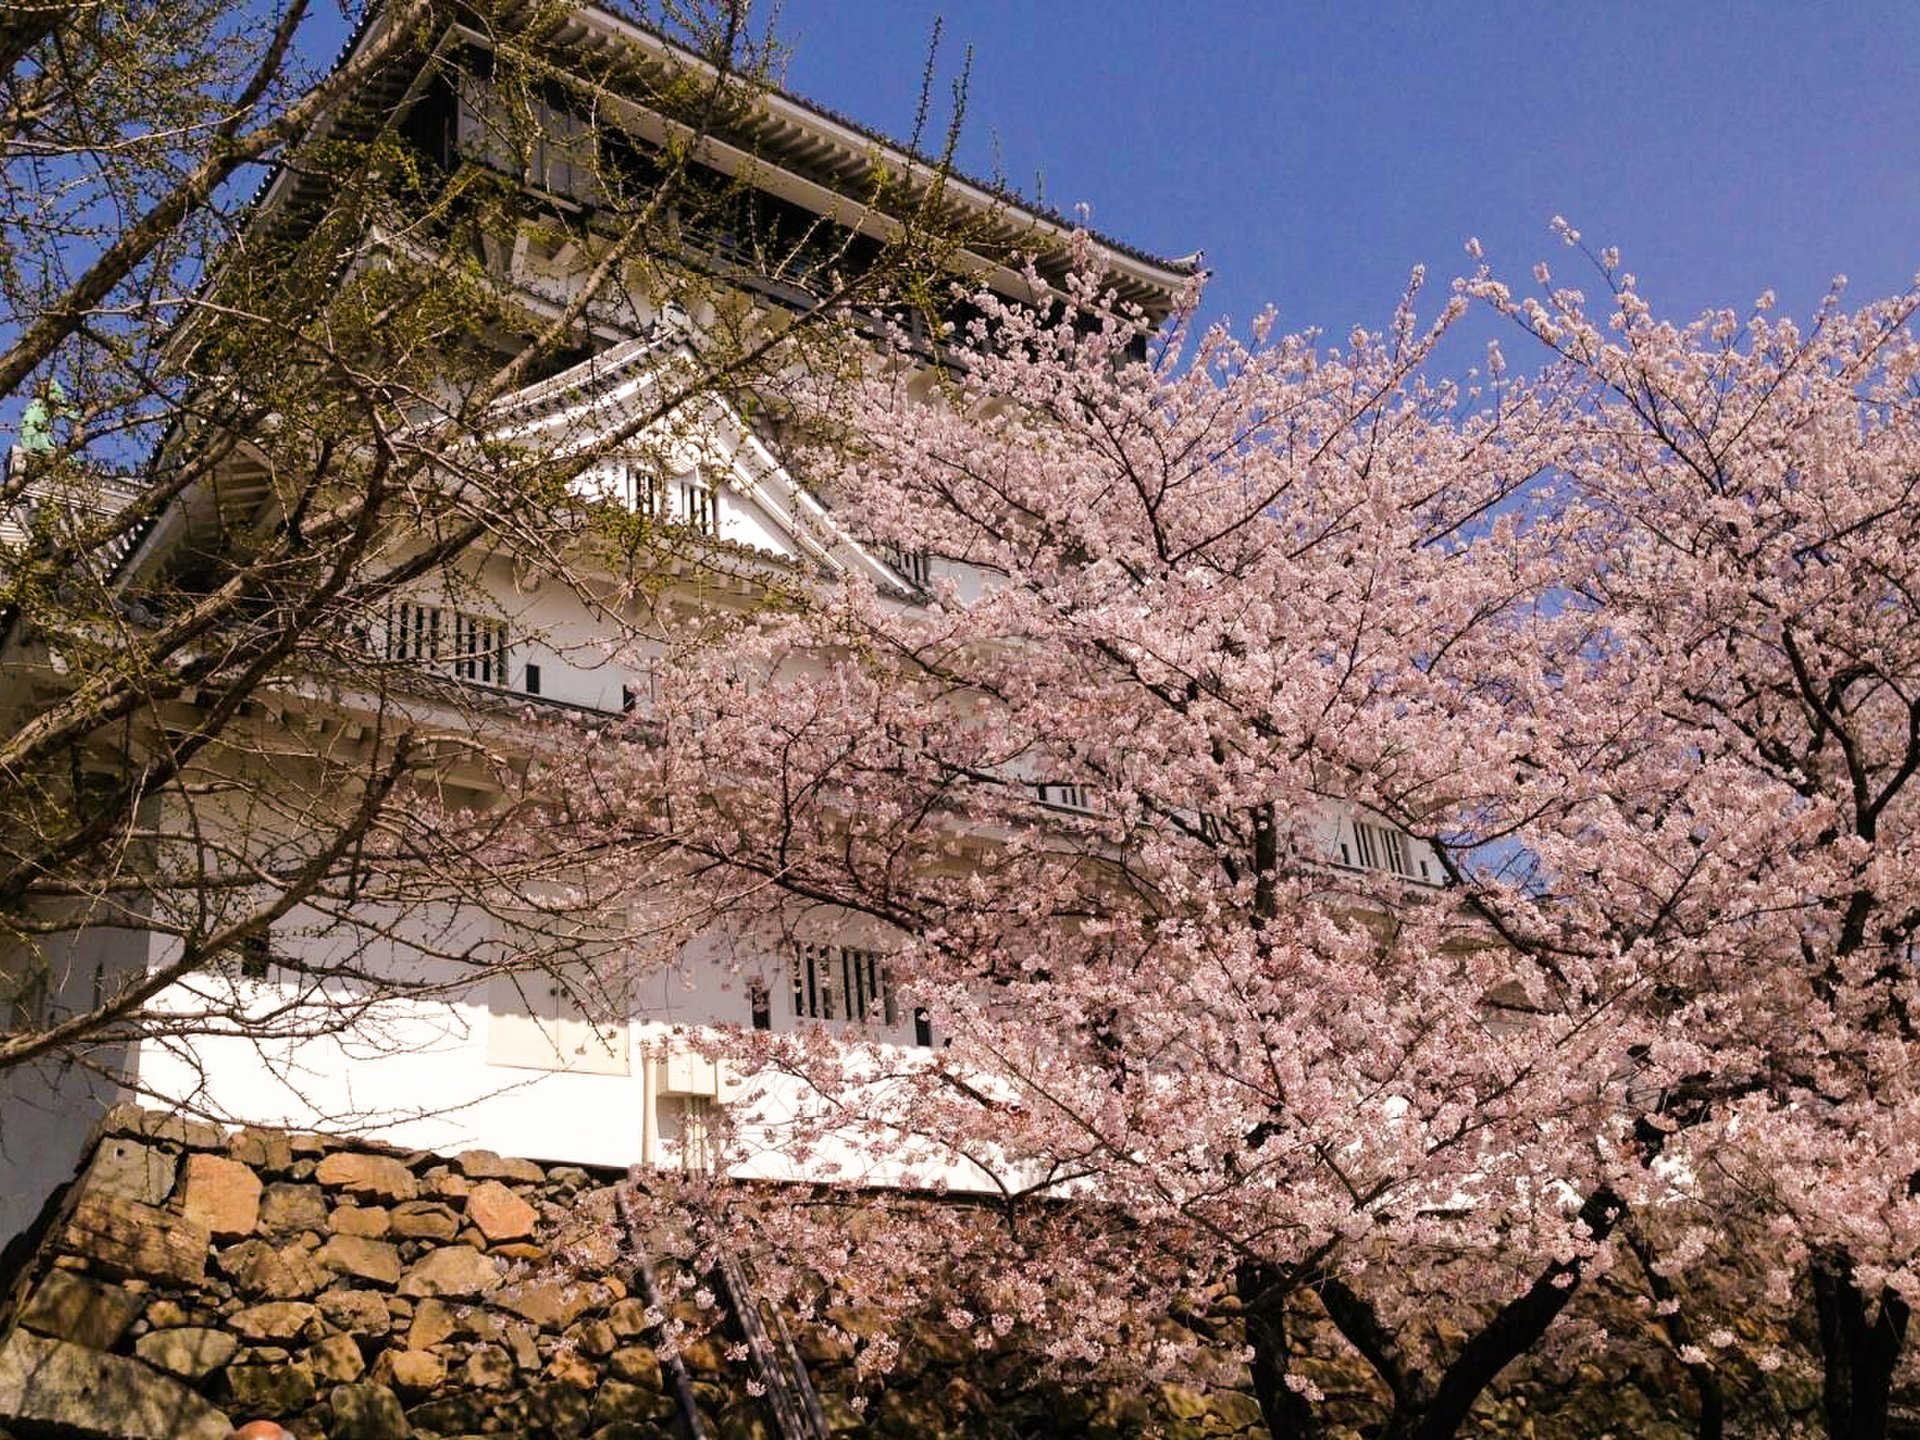 【北九州】桜まつりからSTART! 春に楽しめる北九州グルメ